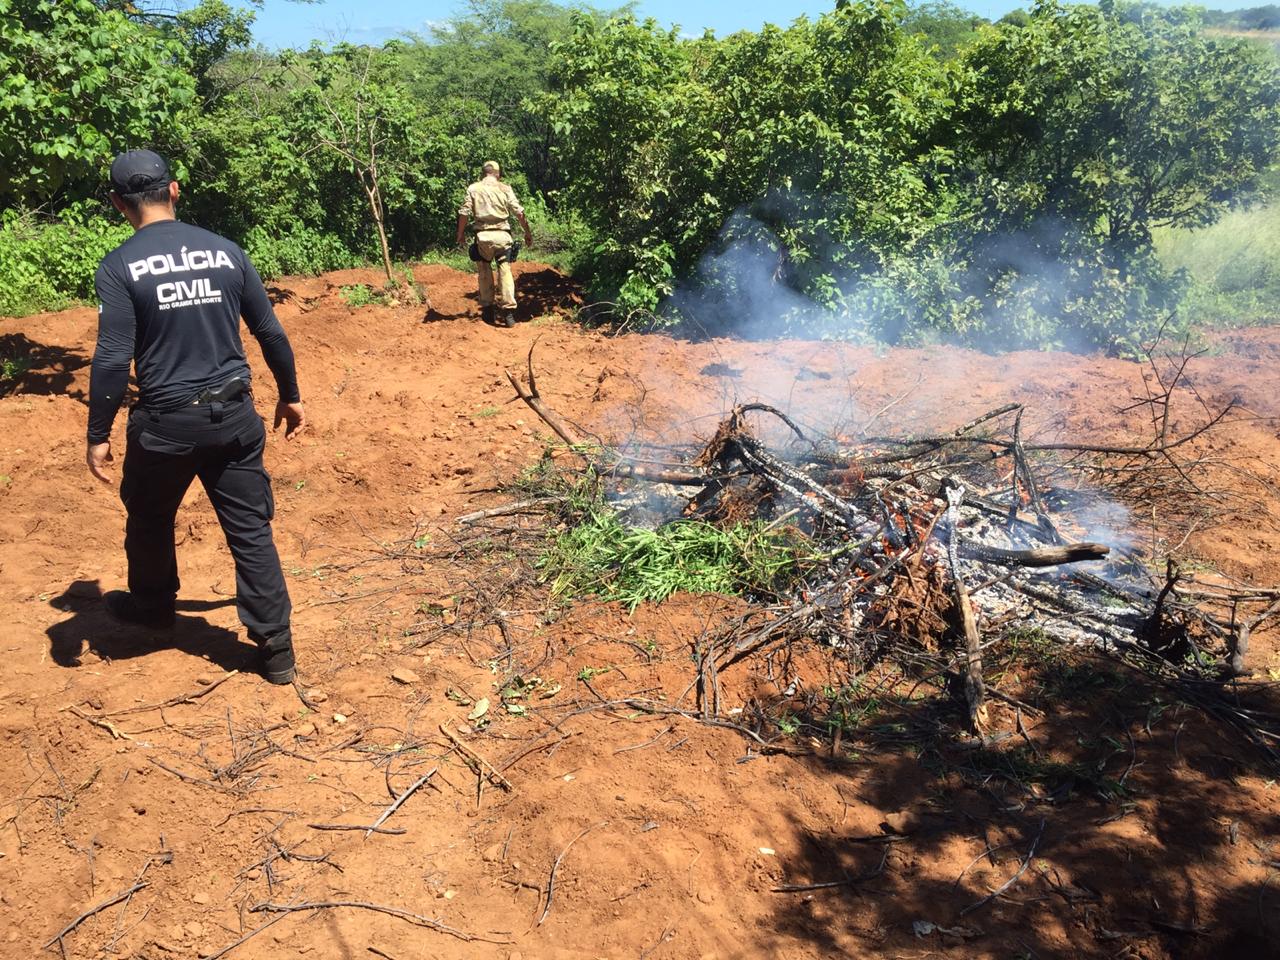 Polícia incinera plantação de maconha localizada em sítio no interior do RN